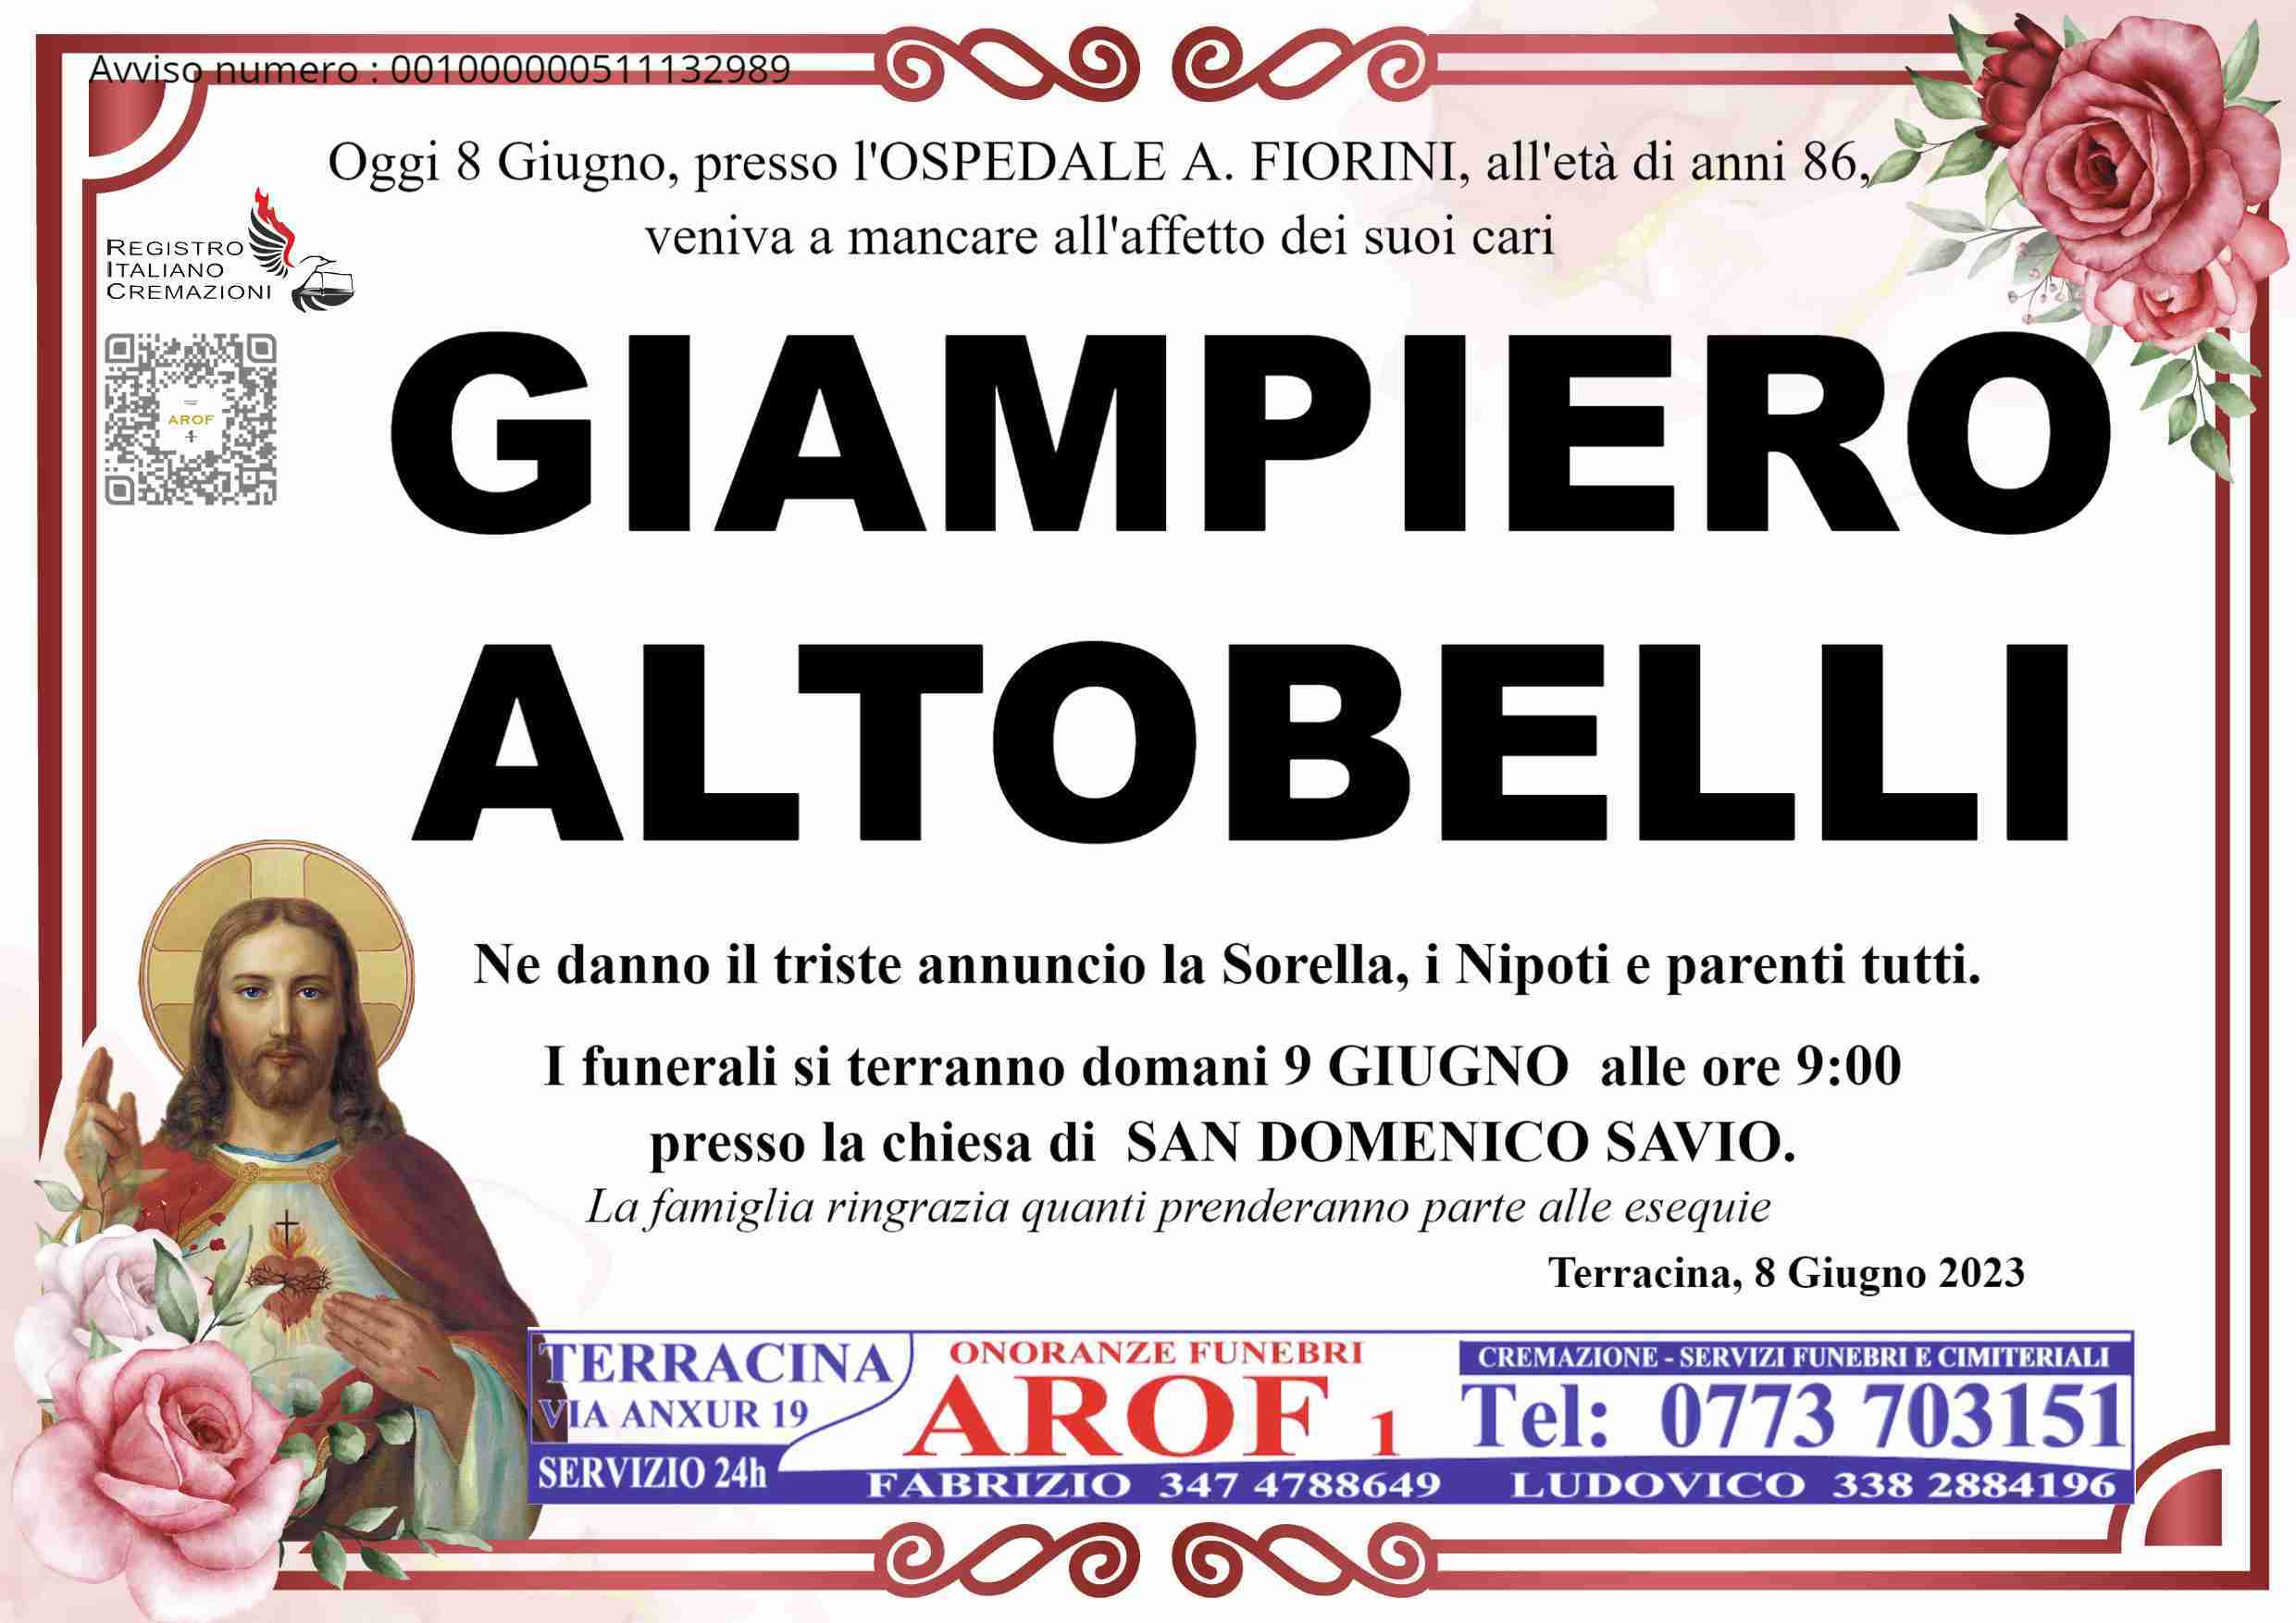 Giampiero Altobelli